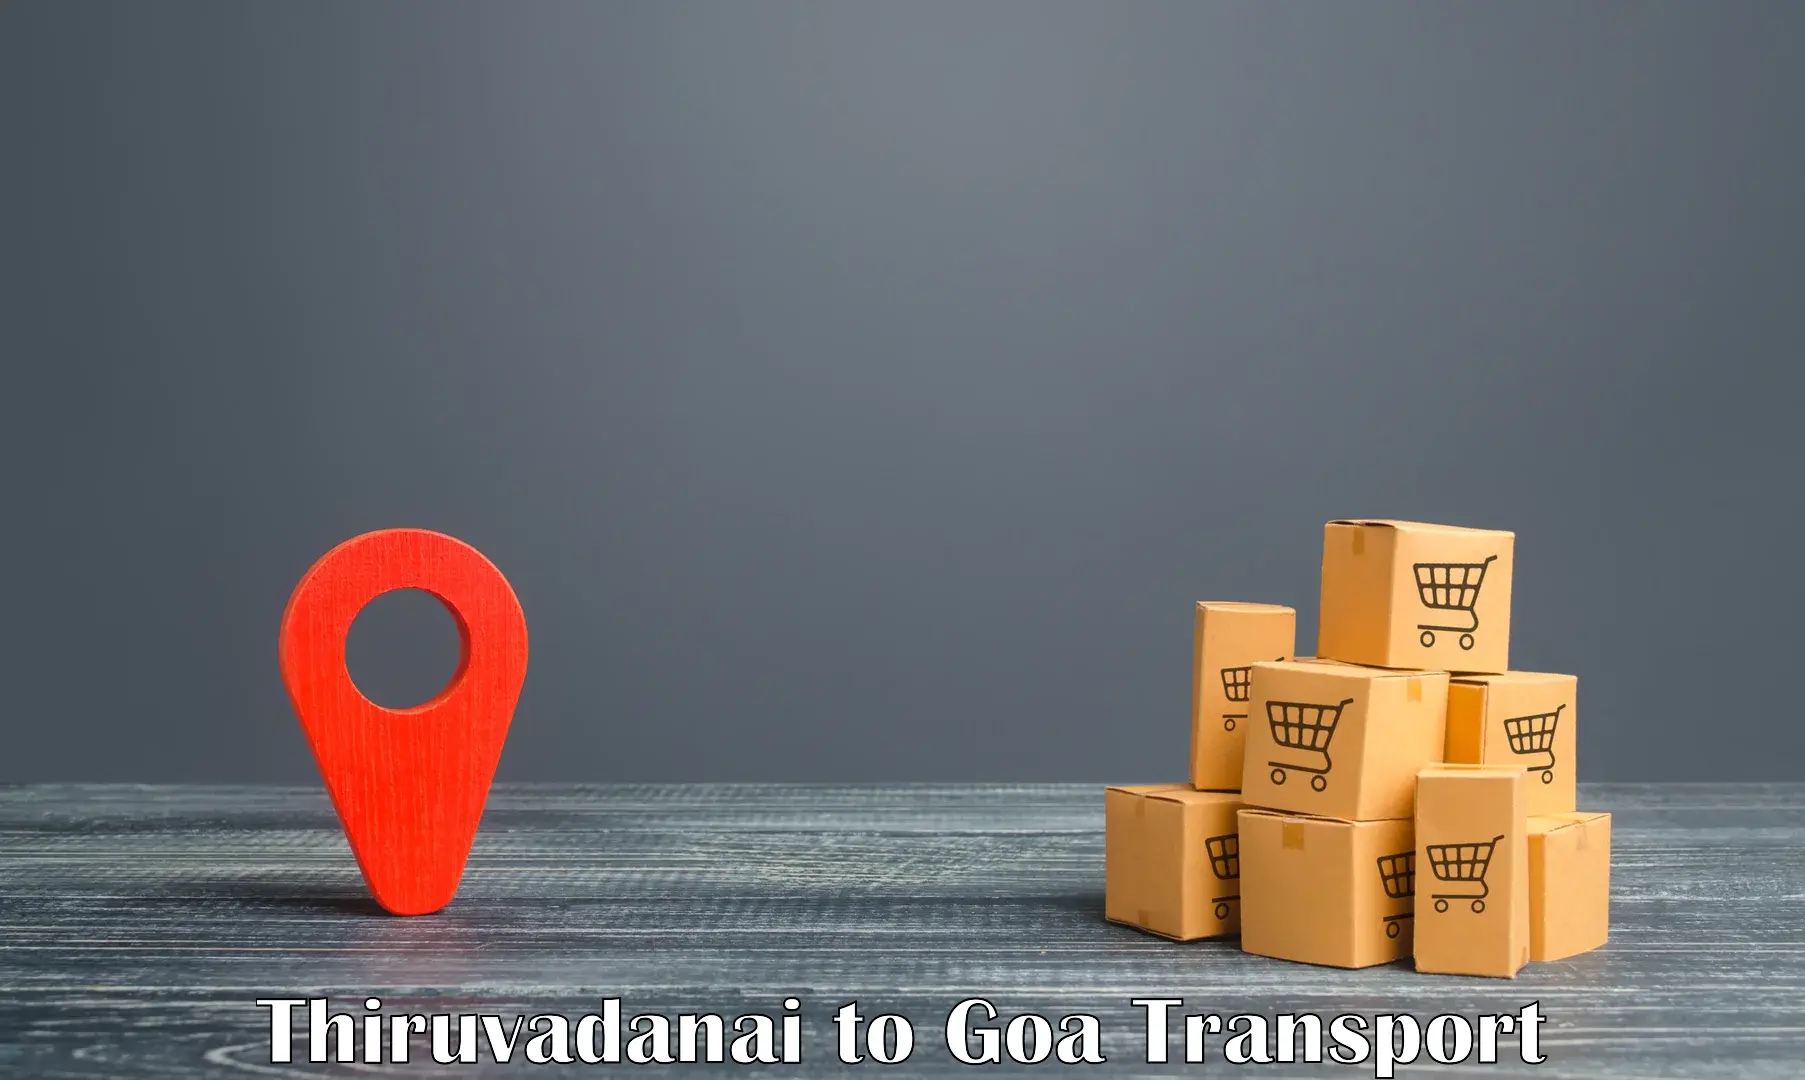 Container transport service Thiruvadanai to Panaji